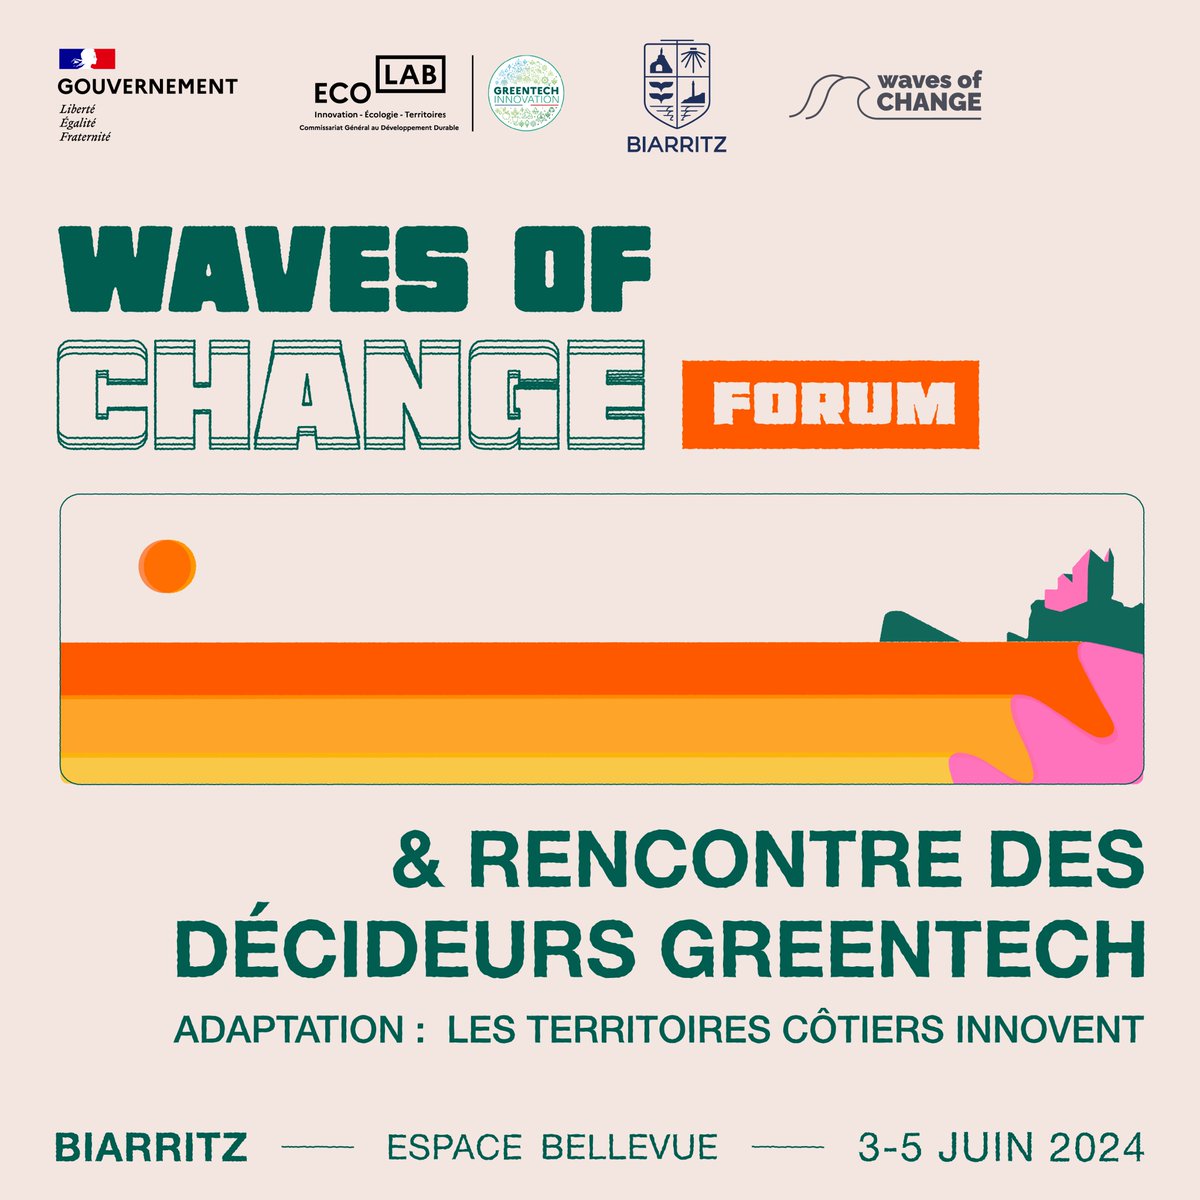 📅 Le Forum Waves of Change x Rencontre des Décideurs Greentech approche !

🌊 @wavesofchange et l'Ecolab du CGDD organisent ensemble cet évènement sur l'#adaptation des territoires côtiers au changement climatique. La Ville de Biarritz est partenaire.

👉greentechinnovation.fr/2024/04/11/for…